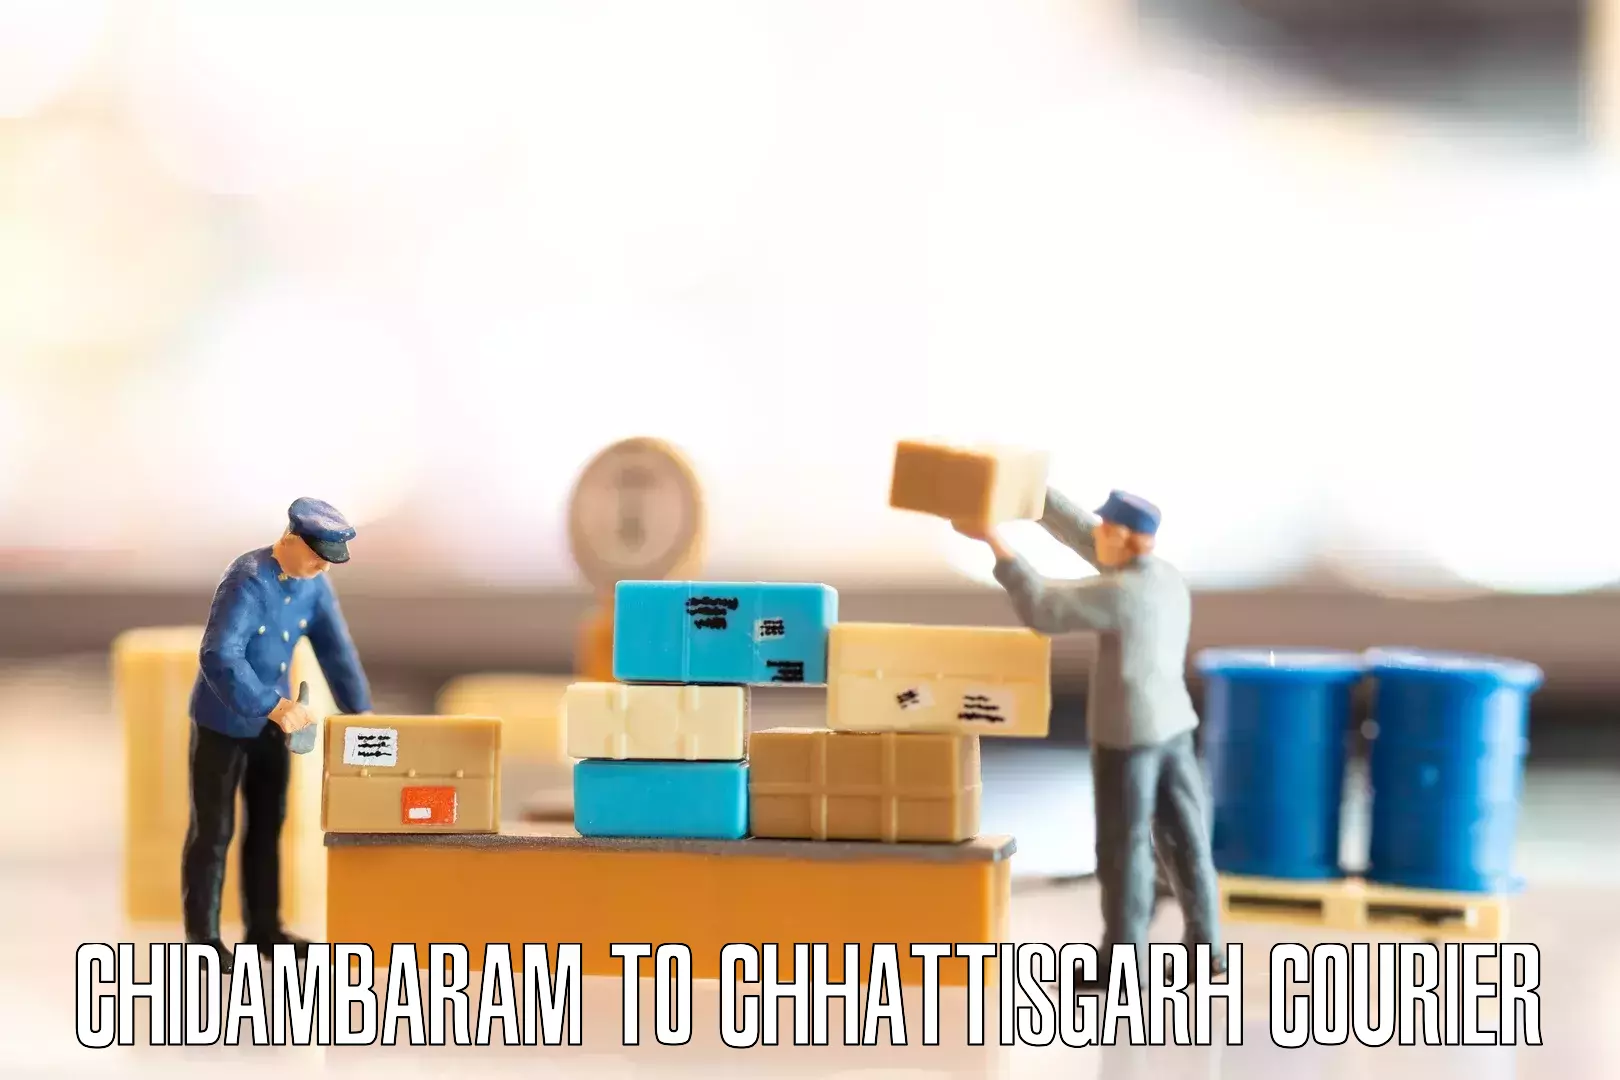 Household goods transport service Chidambaram to Chhattisgarh